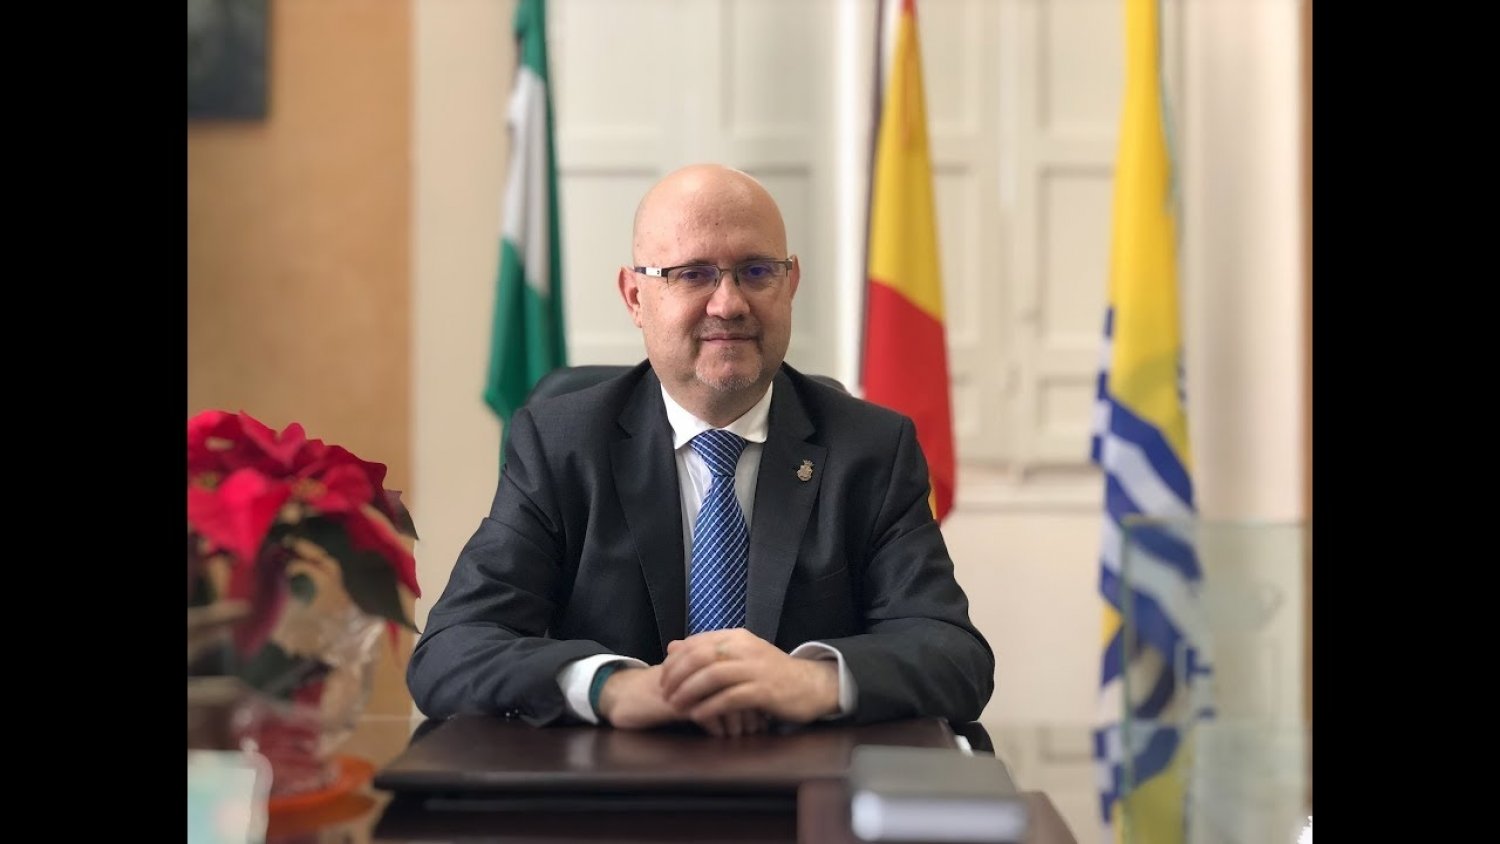 El teniente de alcalde de Torre del Mar dona su sueldo de marzo para ayudar a los afectados por el coronavirus